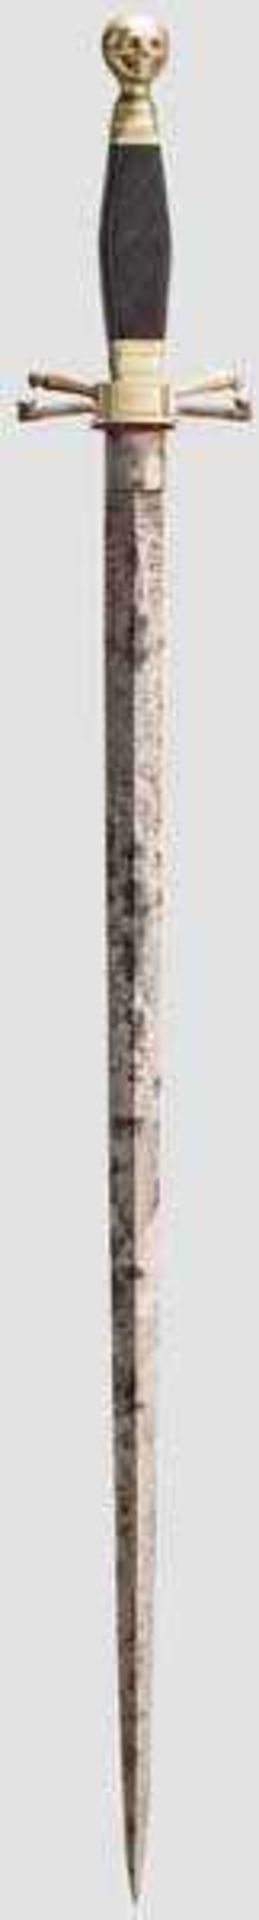 Freimauerer-Dolch, 19. Jhdt. Ungewöhnlich lange, beidseitig gegratete und ornamental geätzte